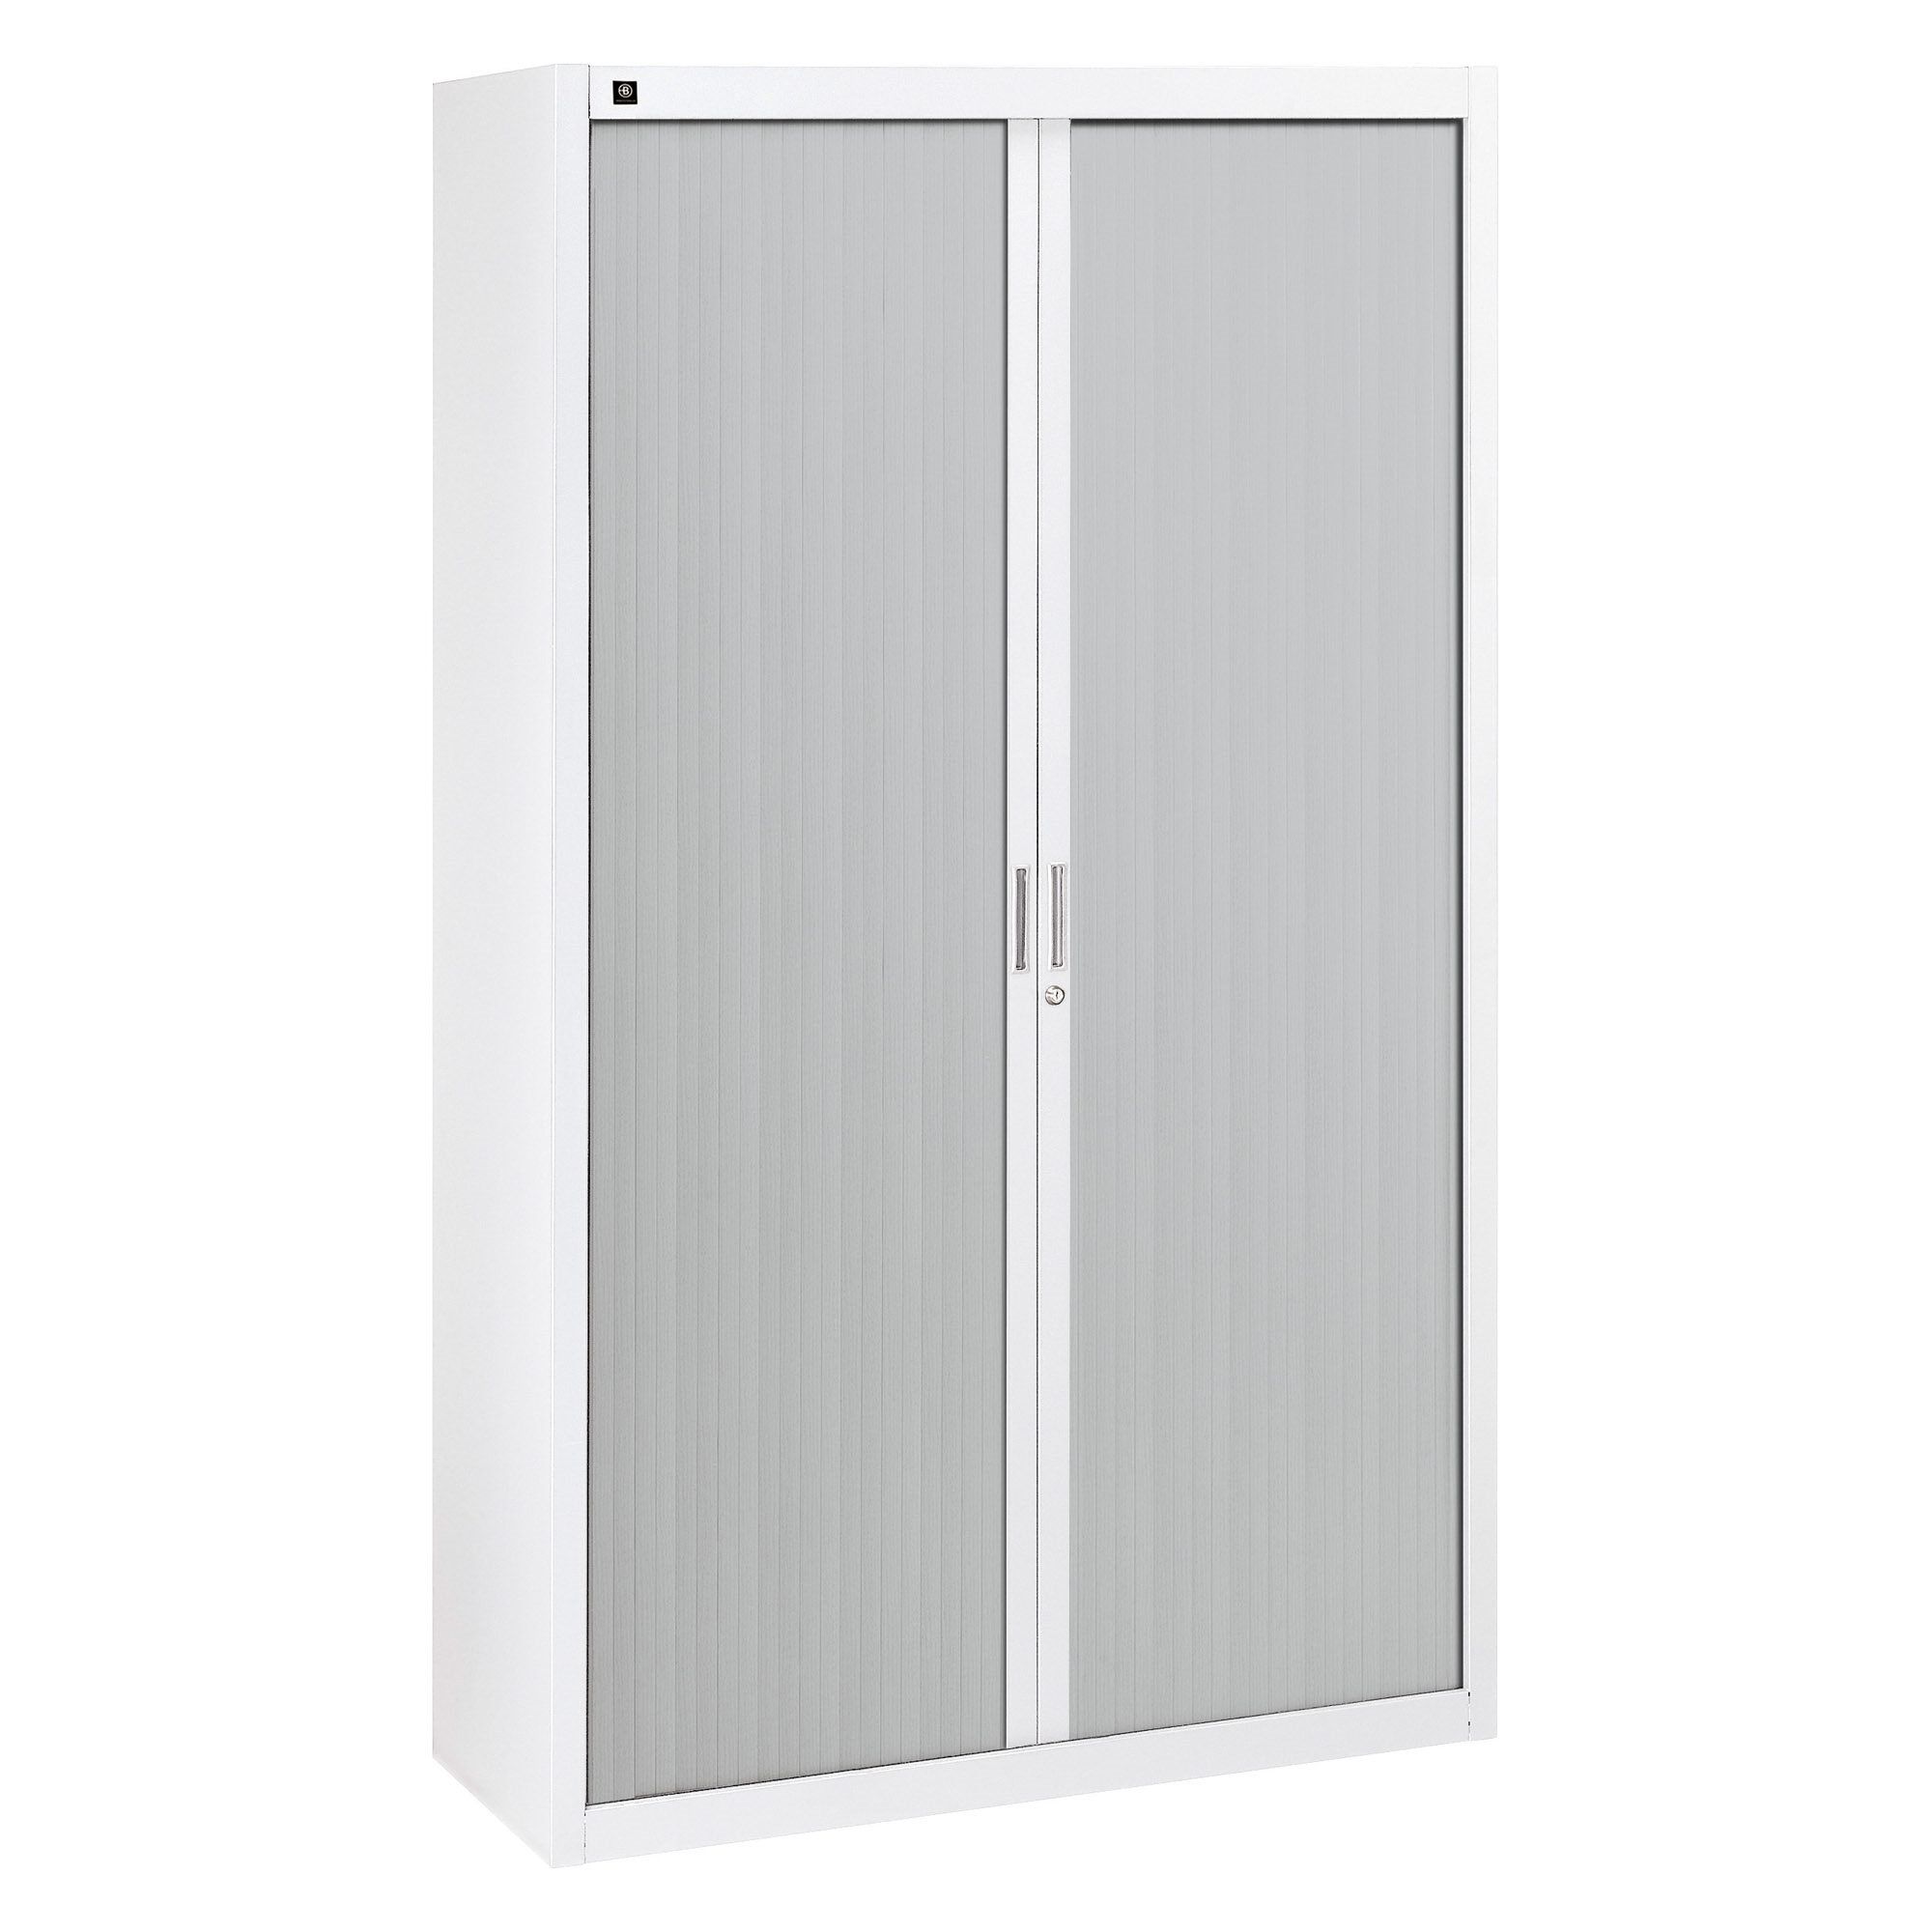 Armoires à rideaux démontables 200 x 120 cm portes aluminium Blanc